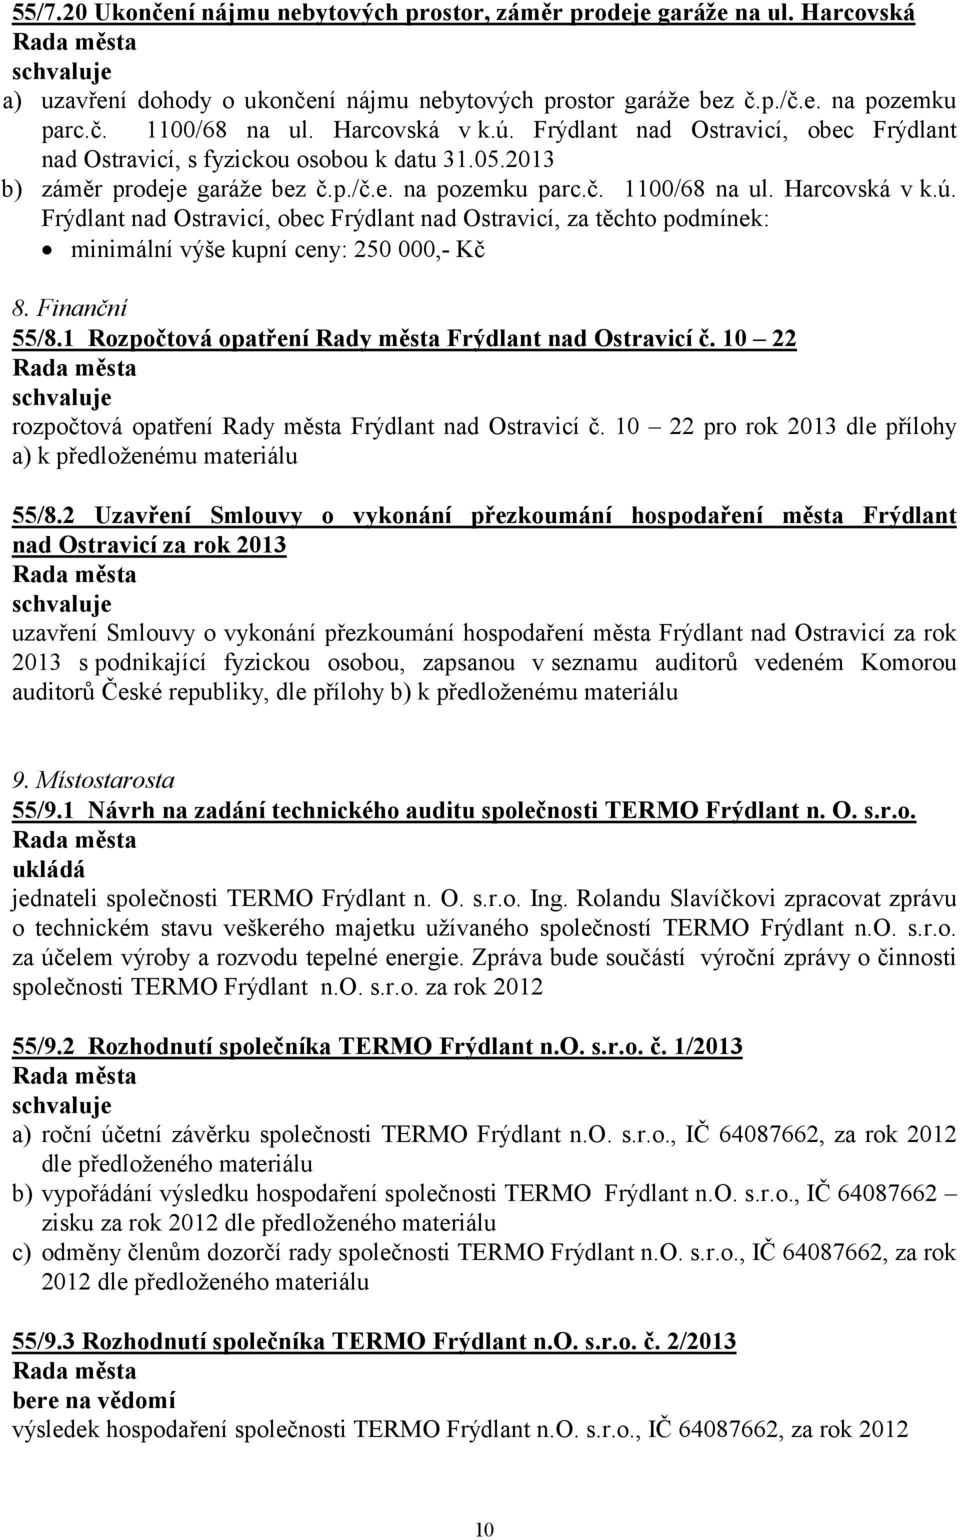 Finanční 55/8.1 Rozpočtová opatření Rady města Frýdlant nad Ostravicí č. 10 22 rozpočtová opatření Rady města Frýdlant nad Ostravicí č. 10 22 pro rok 2013 dle přílohy a) 55/8.